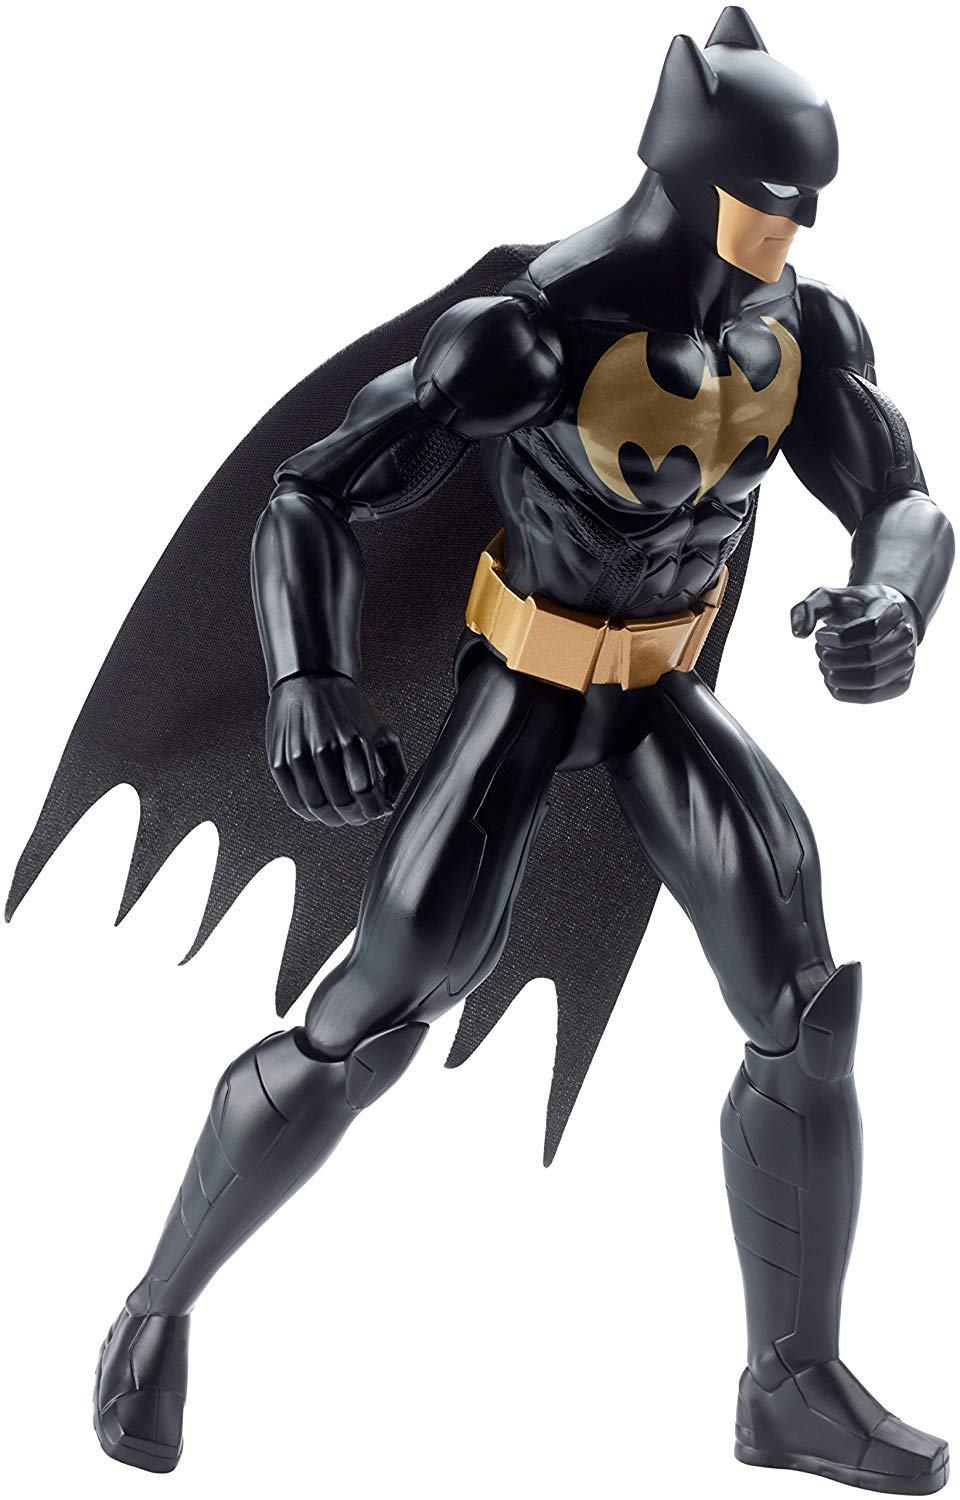 12 Inch Batman Action Figure-Best Batman Toys for Kids